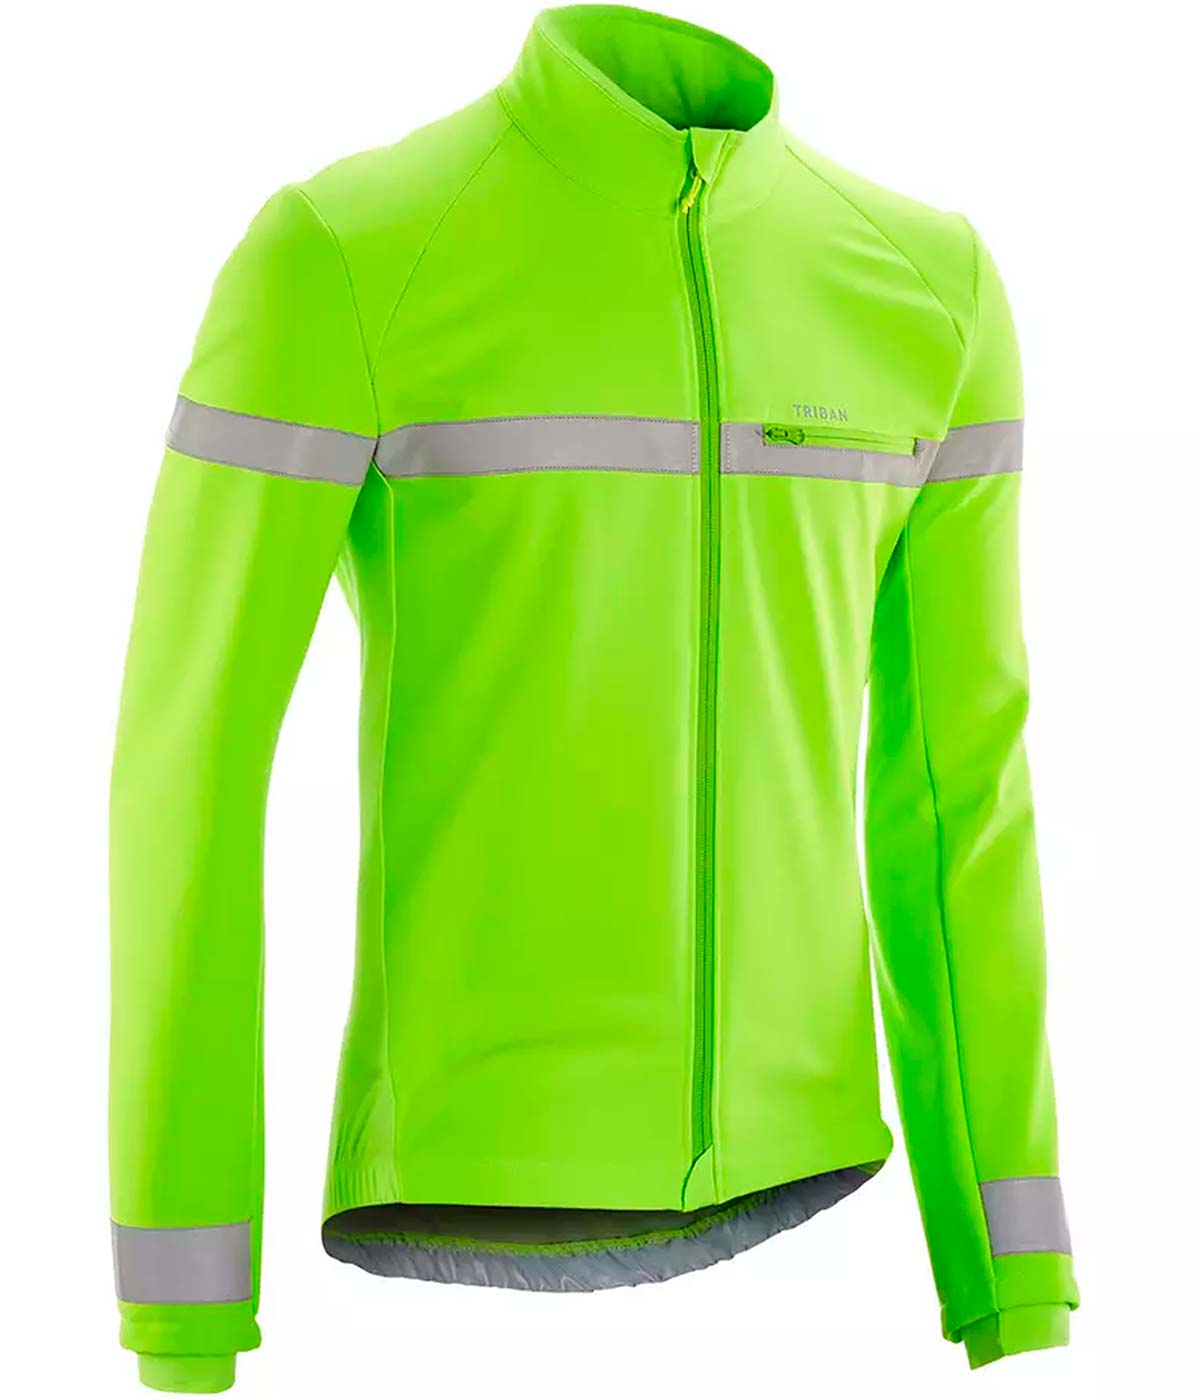 En TodoMountainBike: Decathlon presenta las chaquetas de ciclismo Triban RC EN1150: máxima visibilidad de día y de noche